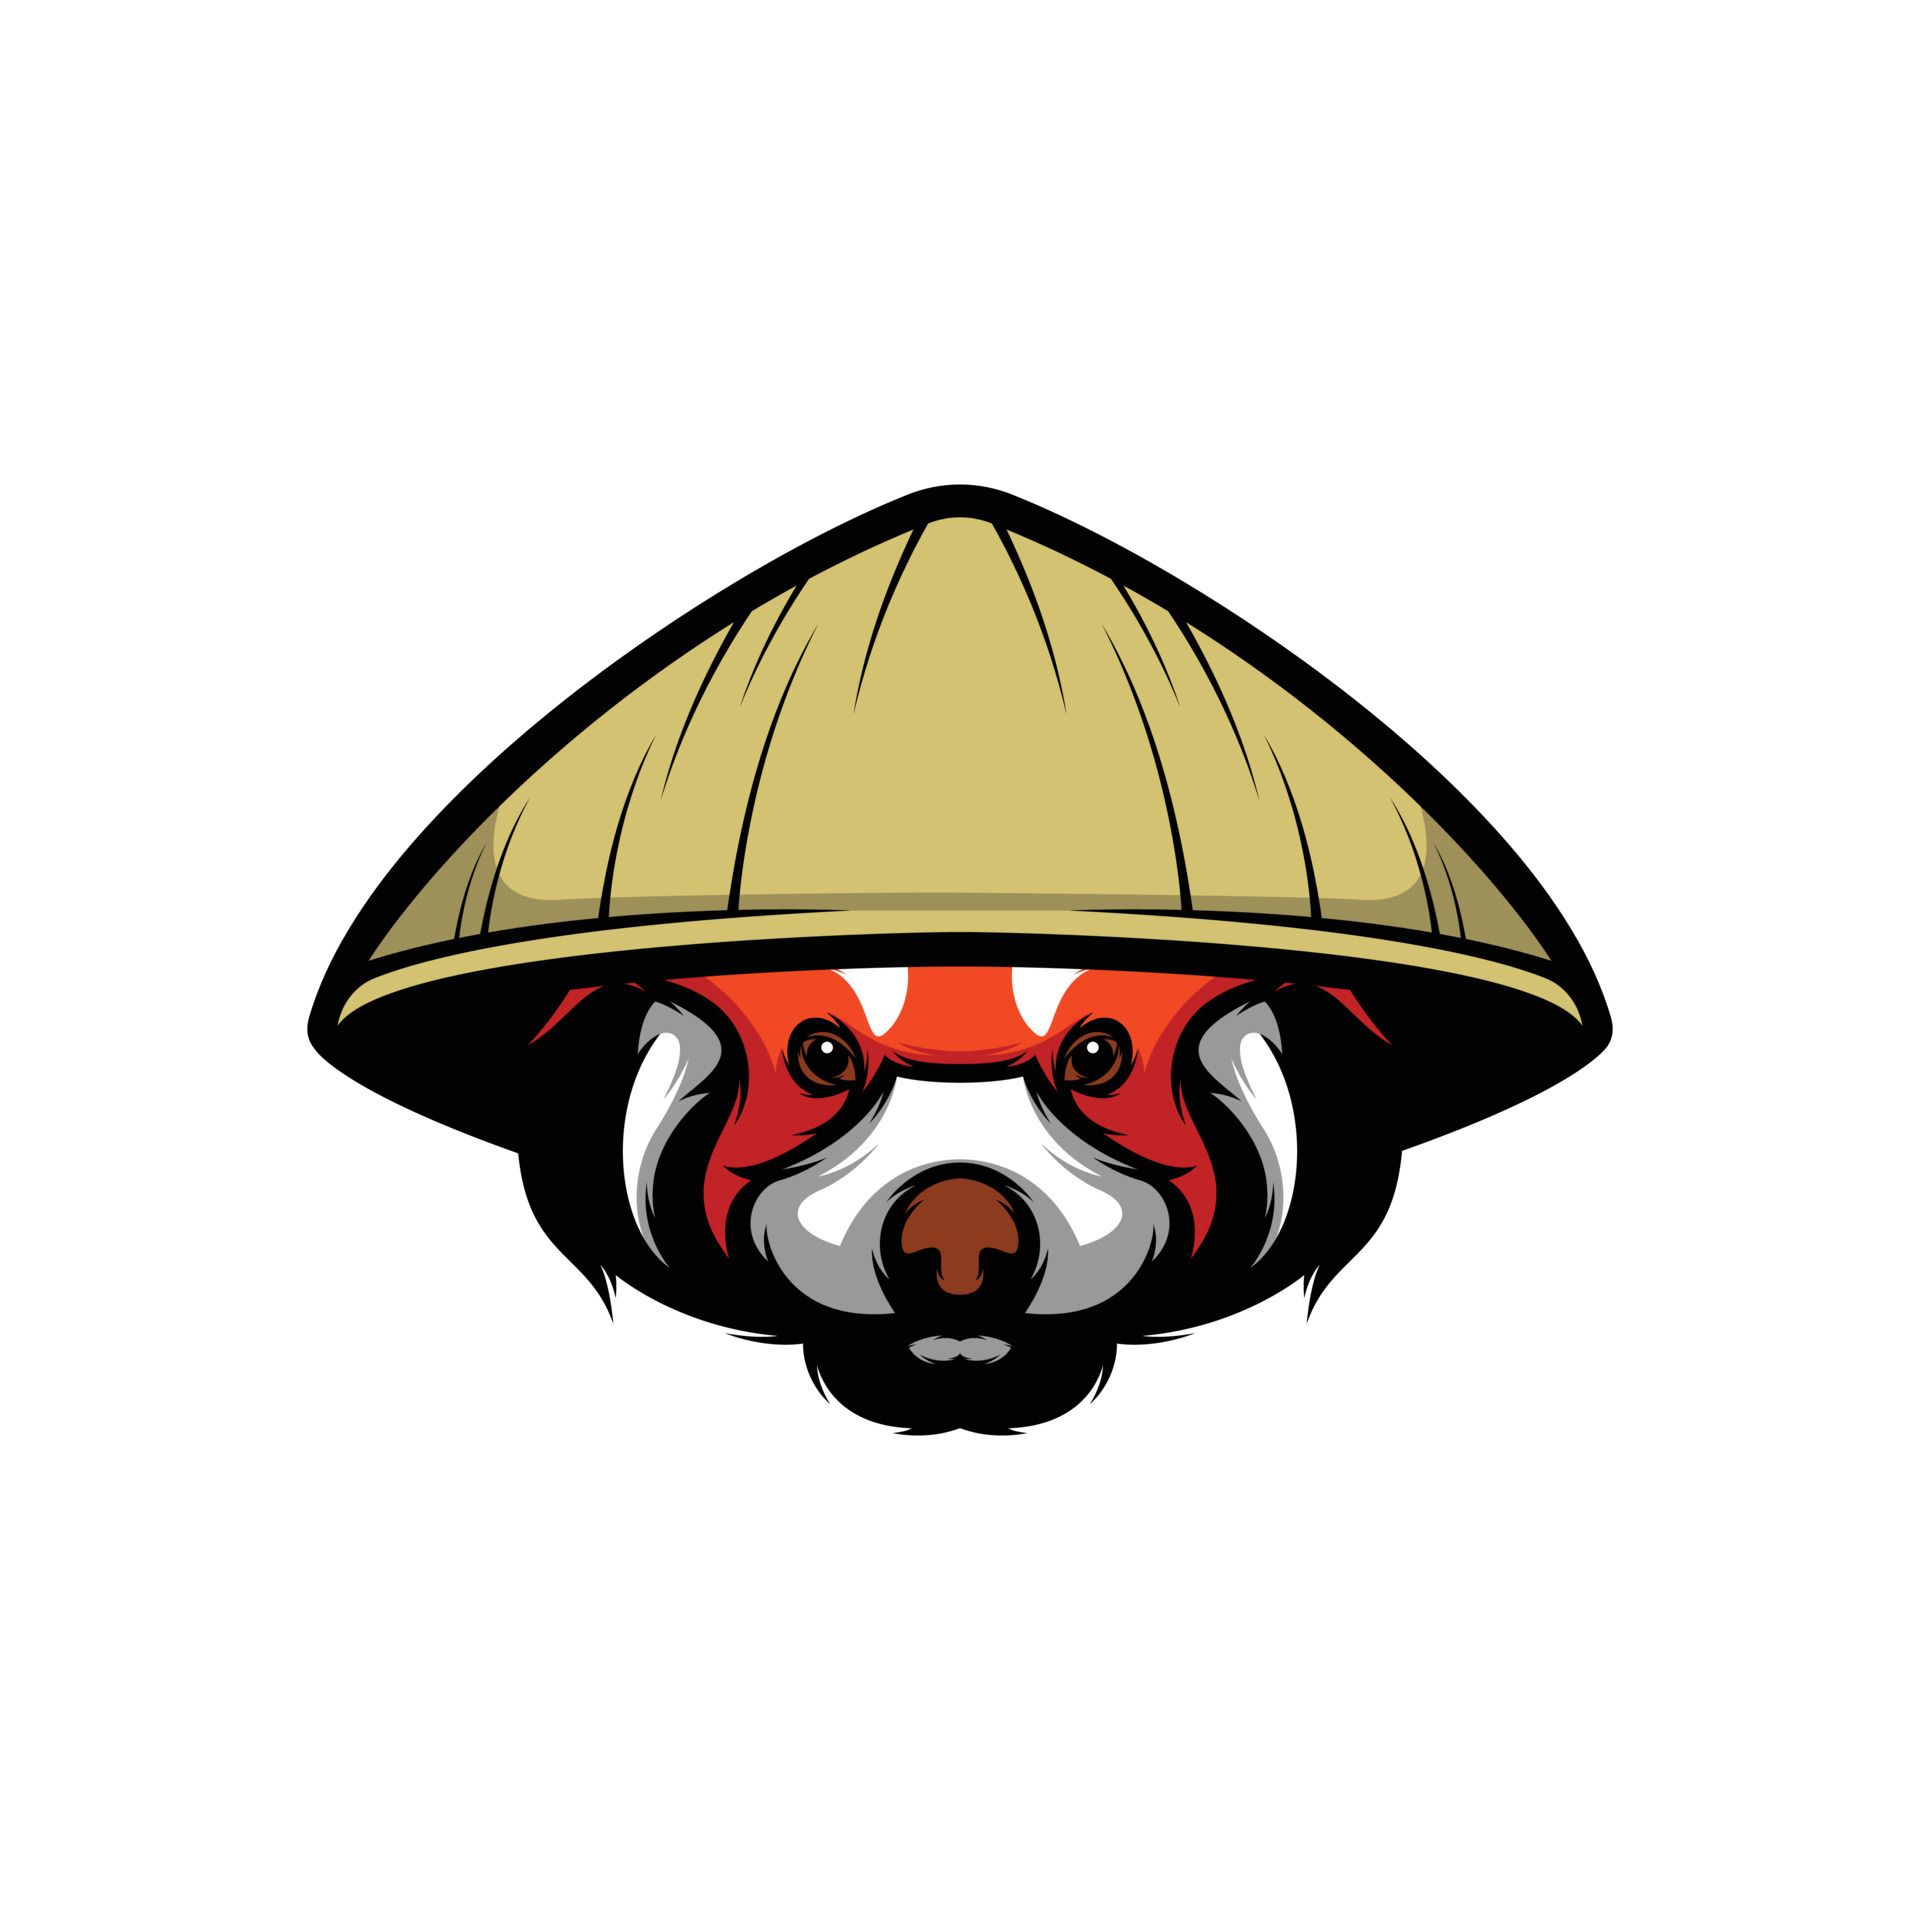 Logotipo Do Mascote Do Desenho Animado Do Panda Fofo PNG , Panda Fofo,  Mascote, Esport Imagem PNG e Vetor Para Download Gratuito